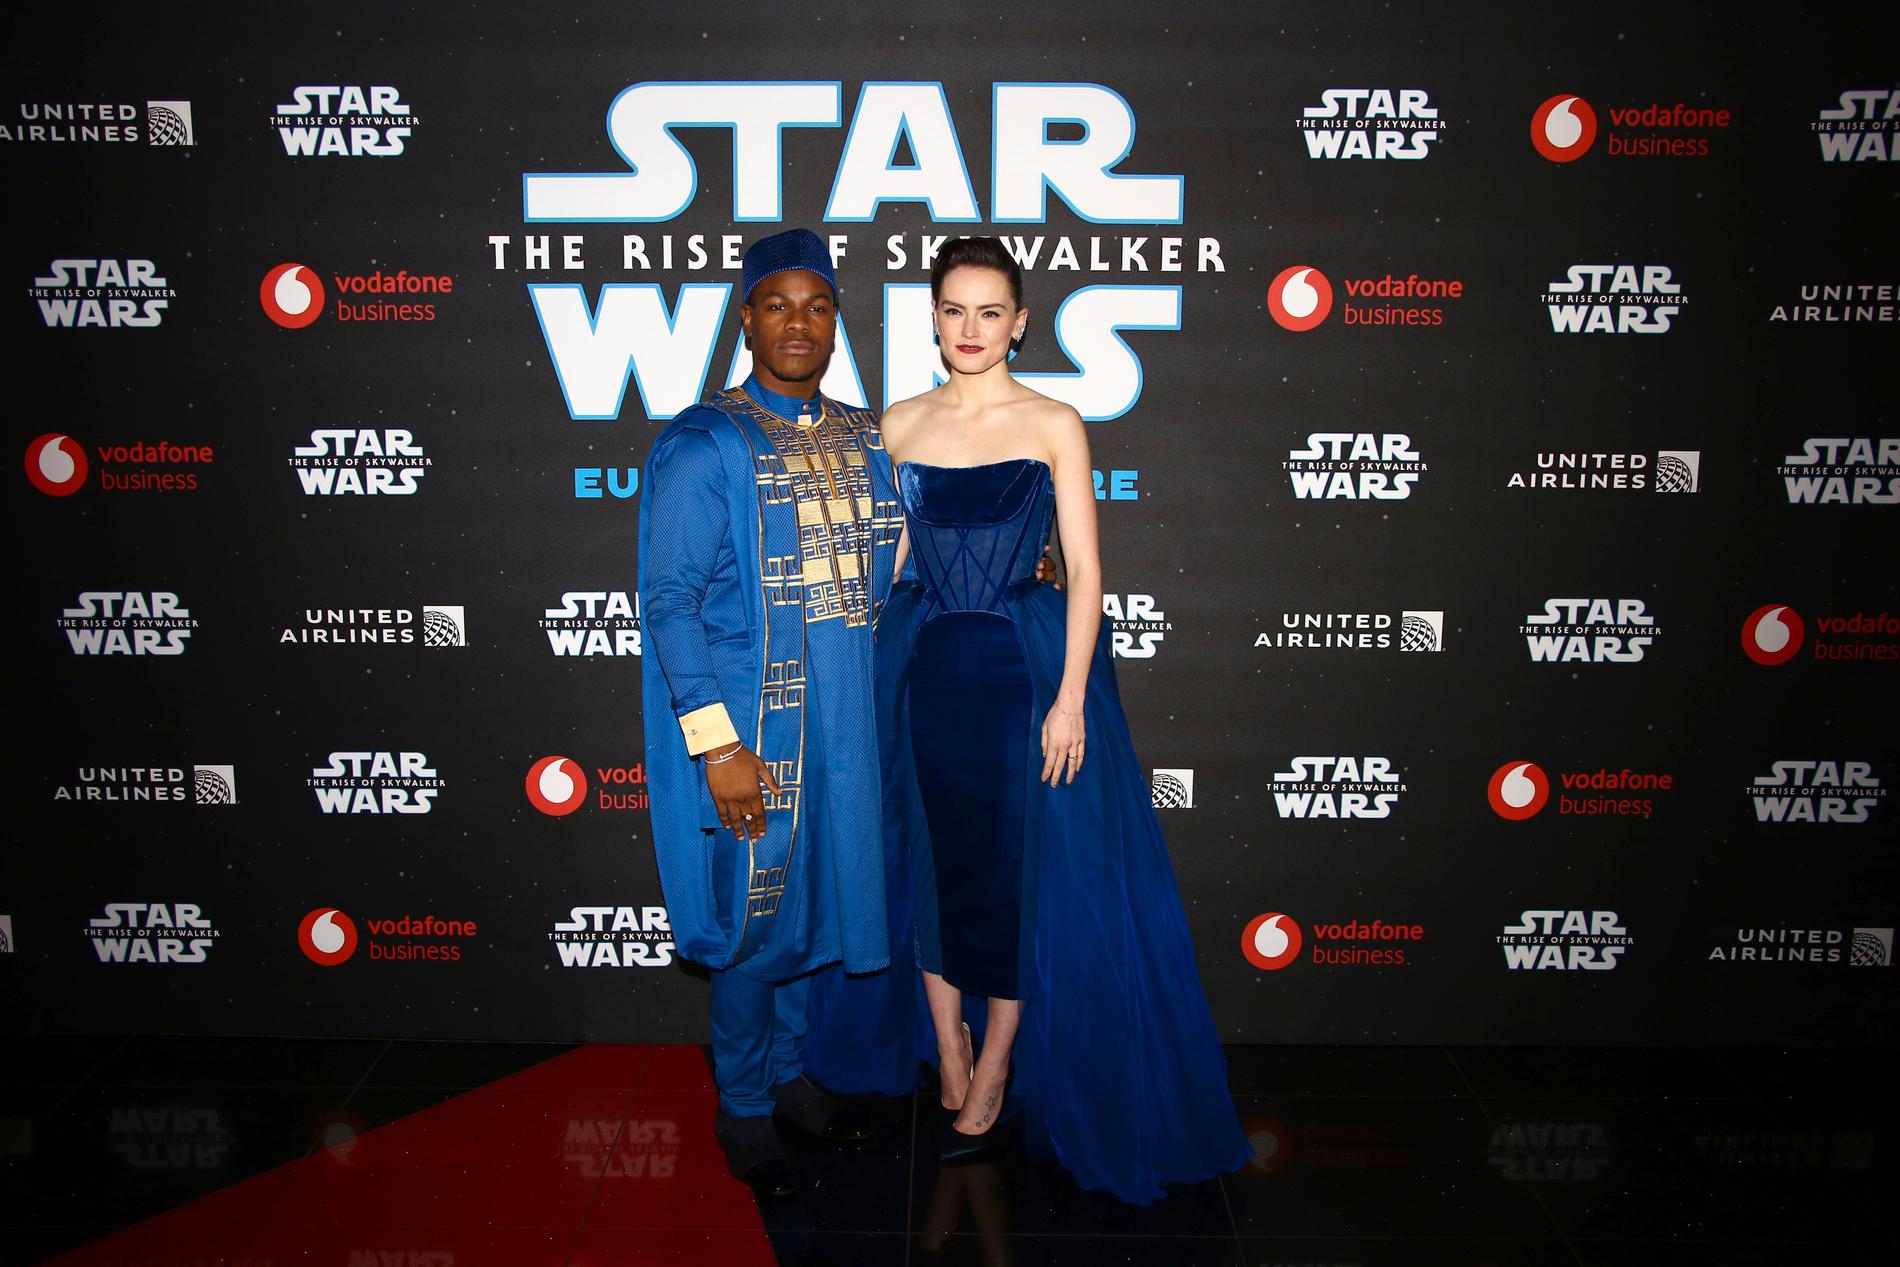 Skådespelarna John Boyega och Daisy Ridley under en premiärvisning av "Star wars: The rise of Skywalker".